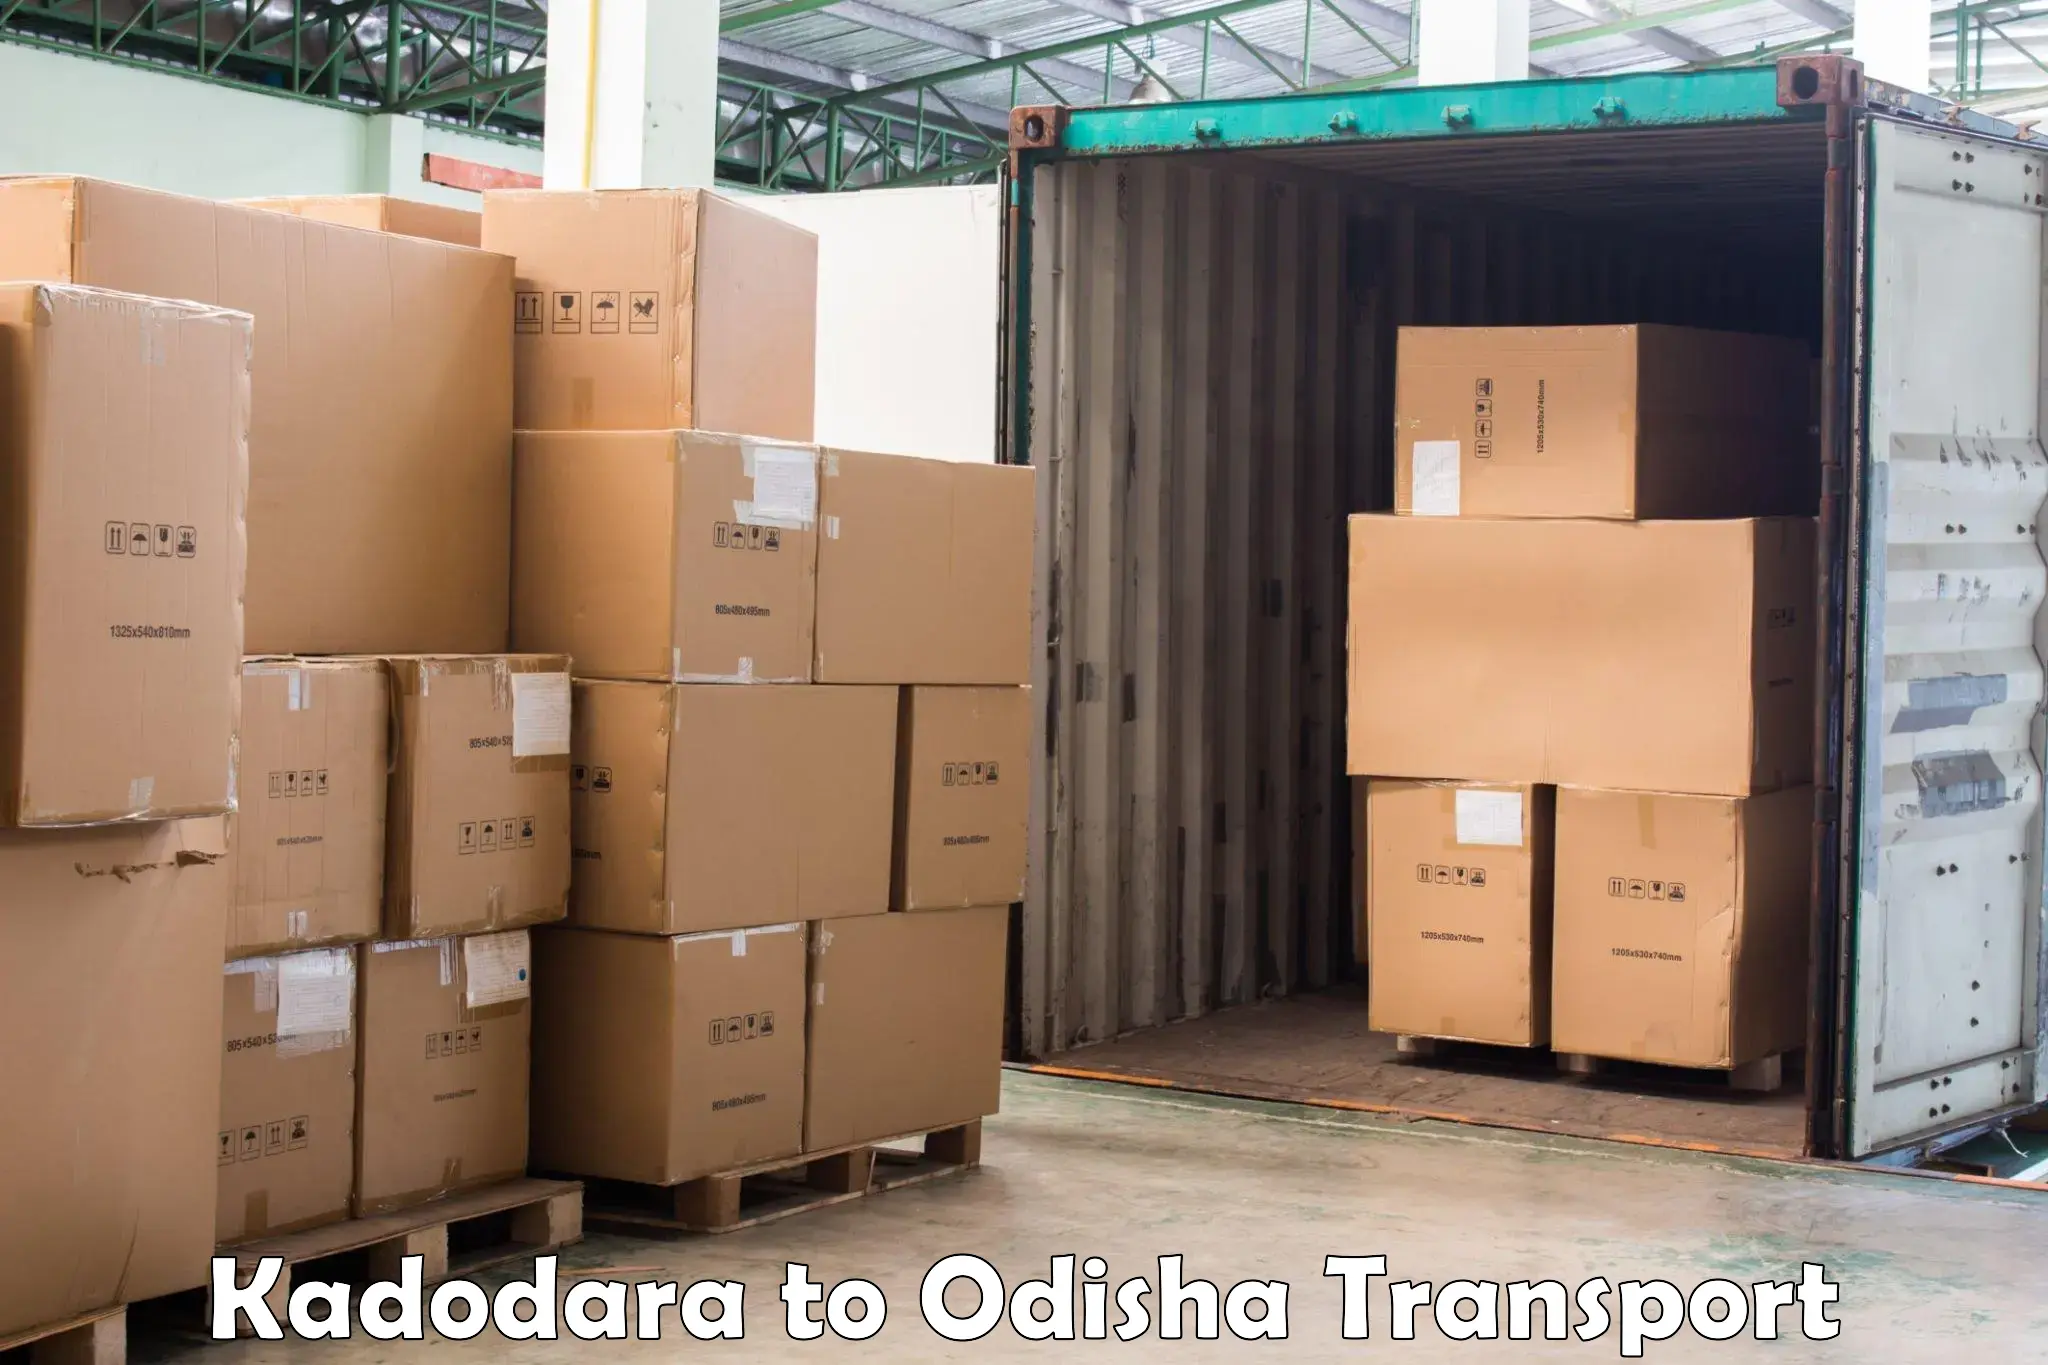 Daily parcel service transport Kadodara to IIT Bhubaneshwar